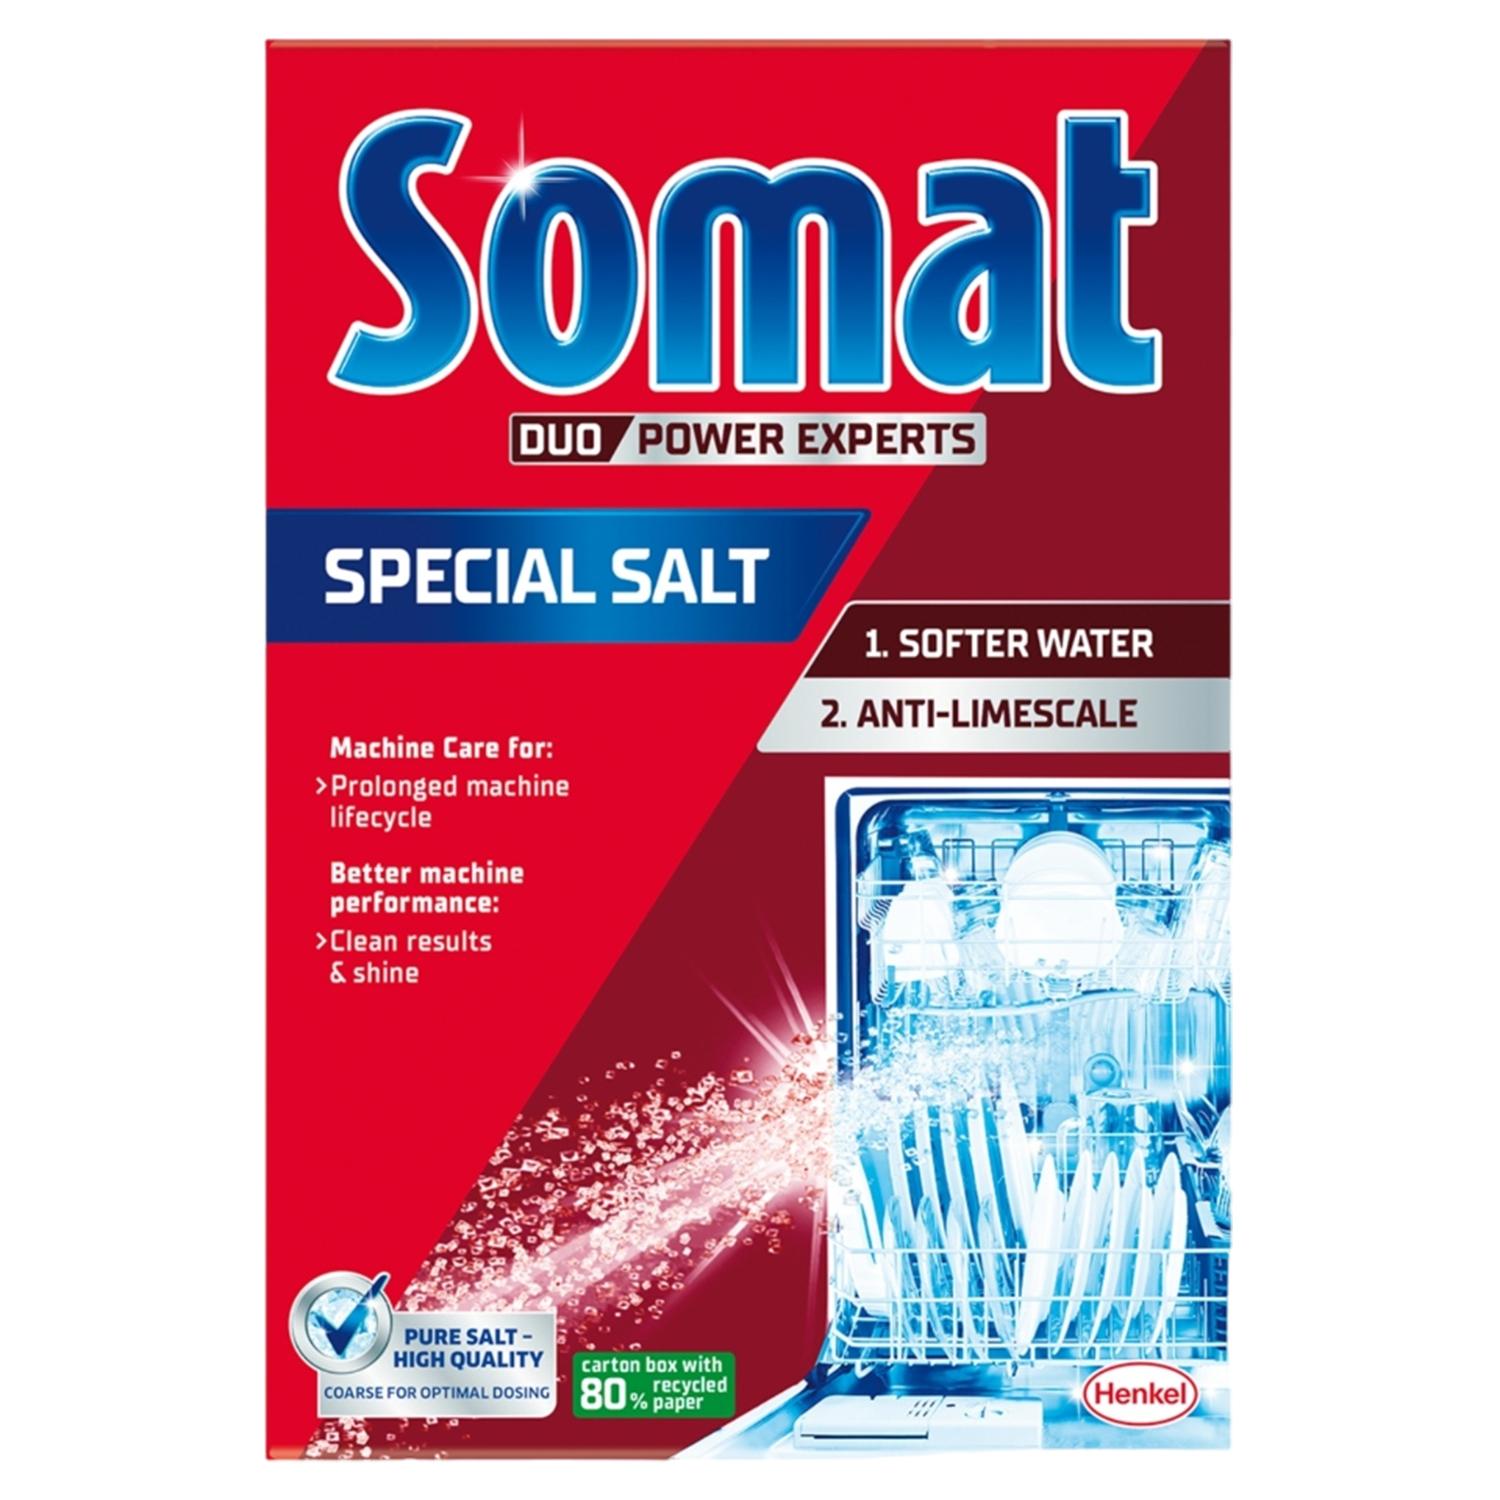 Selected image for Somat Duo Power Experts Special Salt Tablete za čišćenje mašine za sudove, 1.5 kg